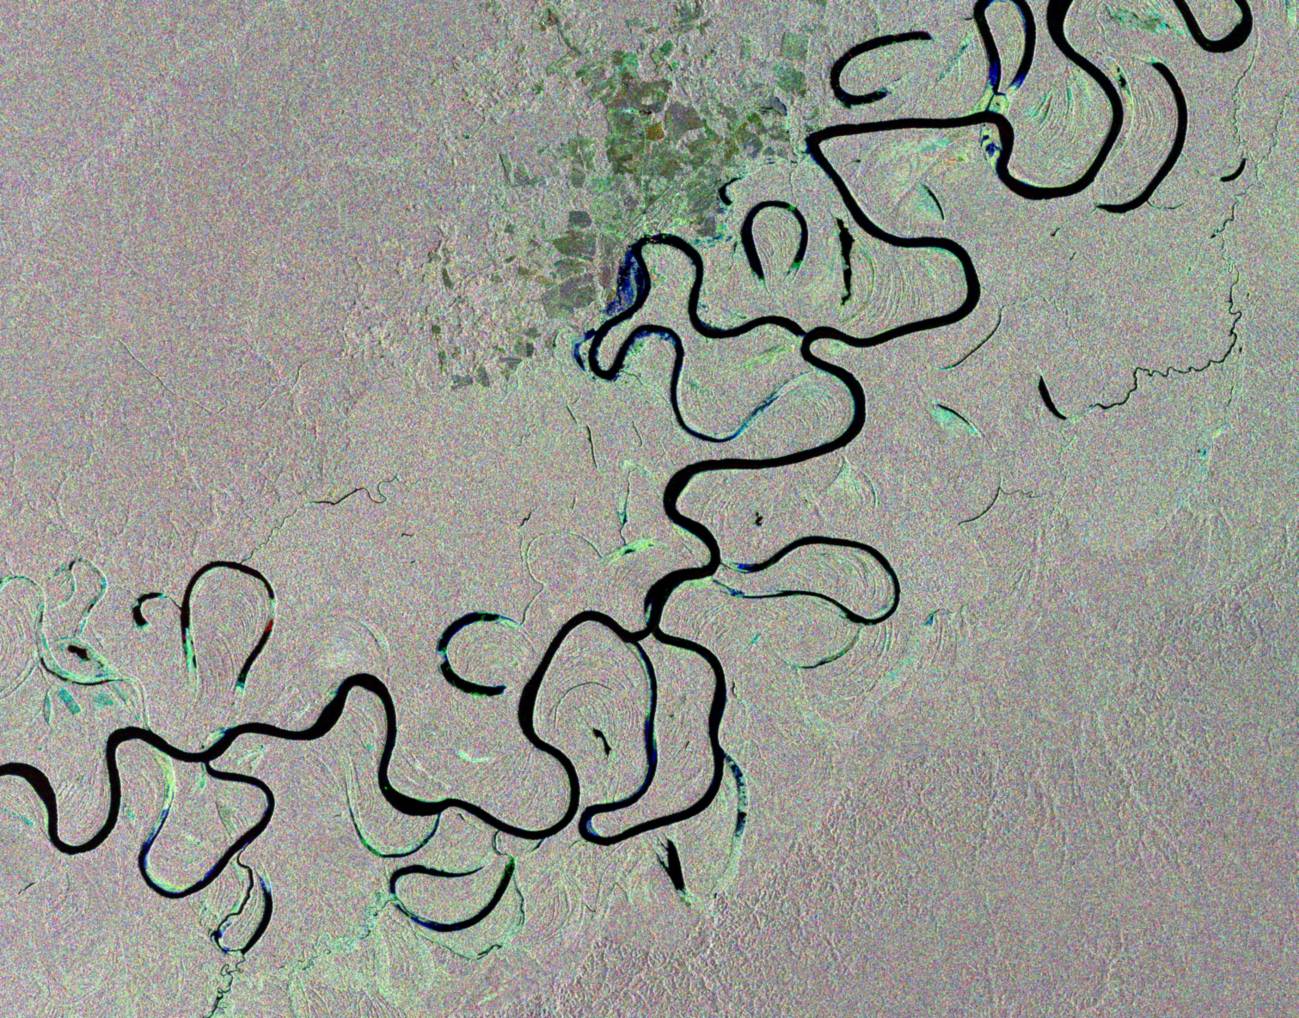 El río brasileño Juruá visto desde el espacio. Imagen: ESA